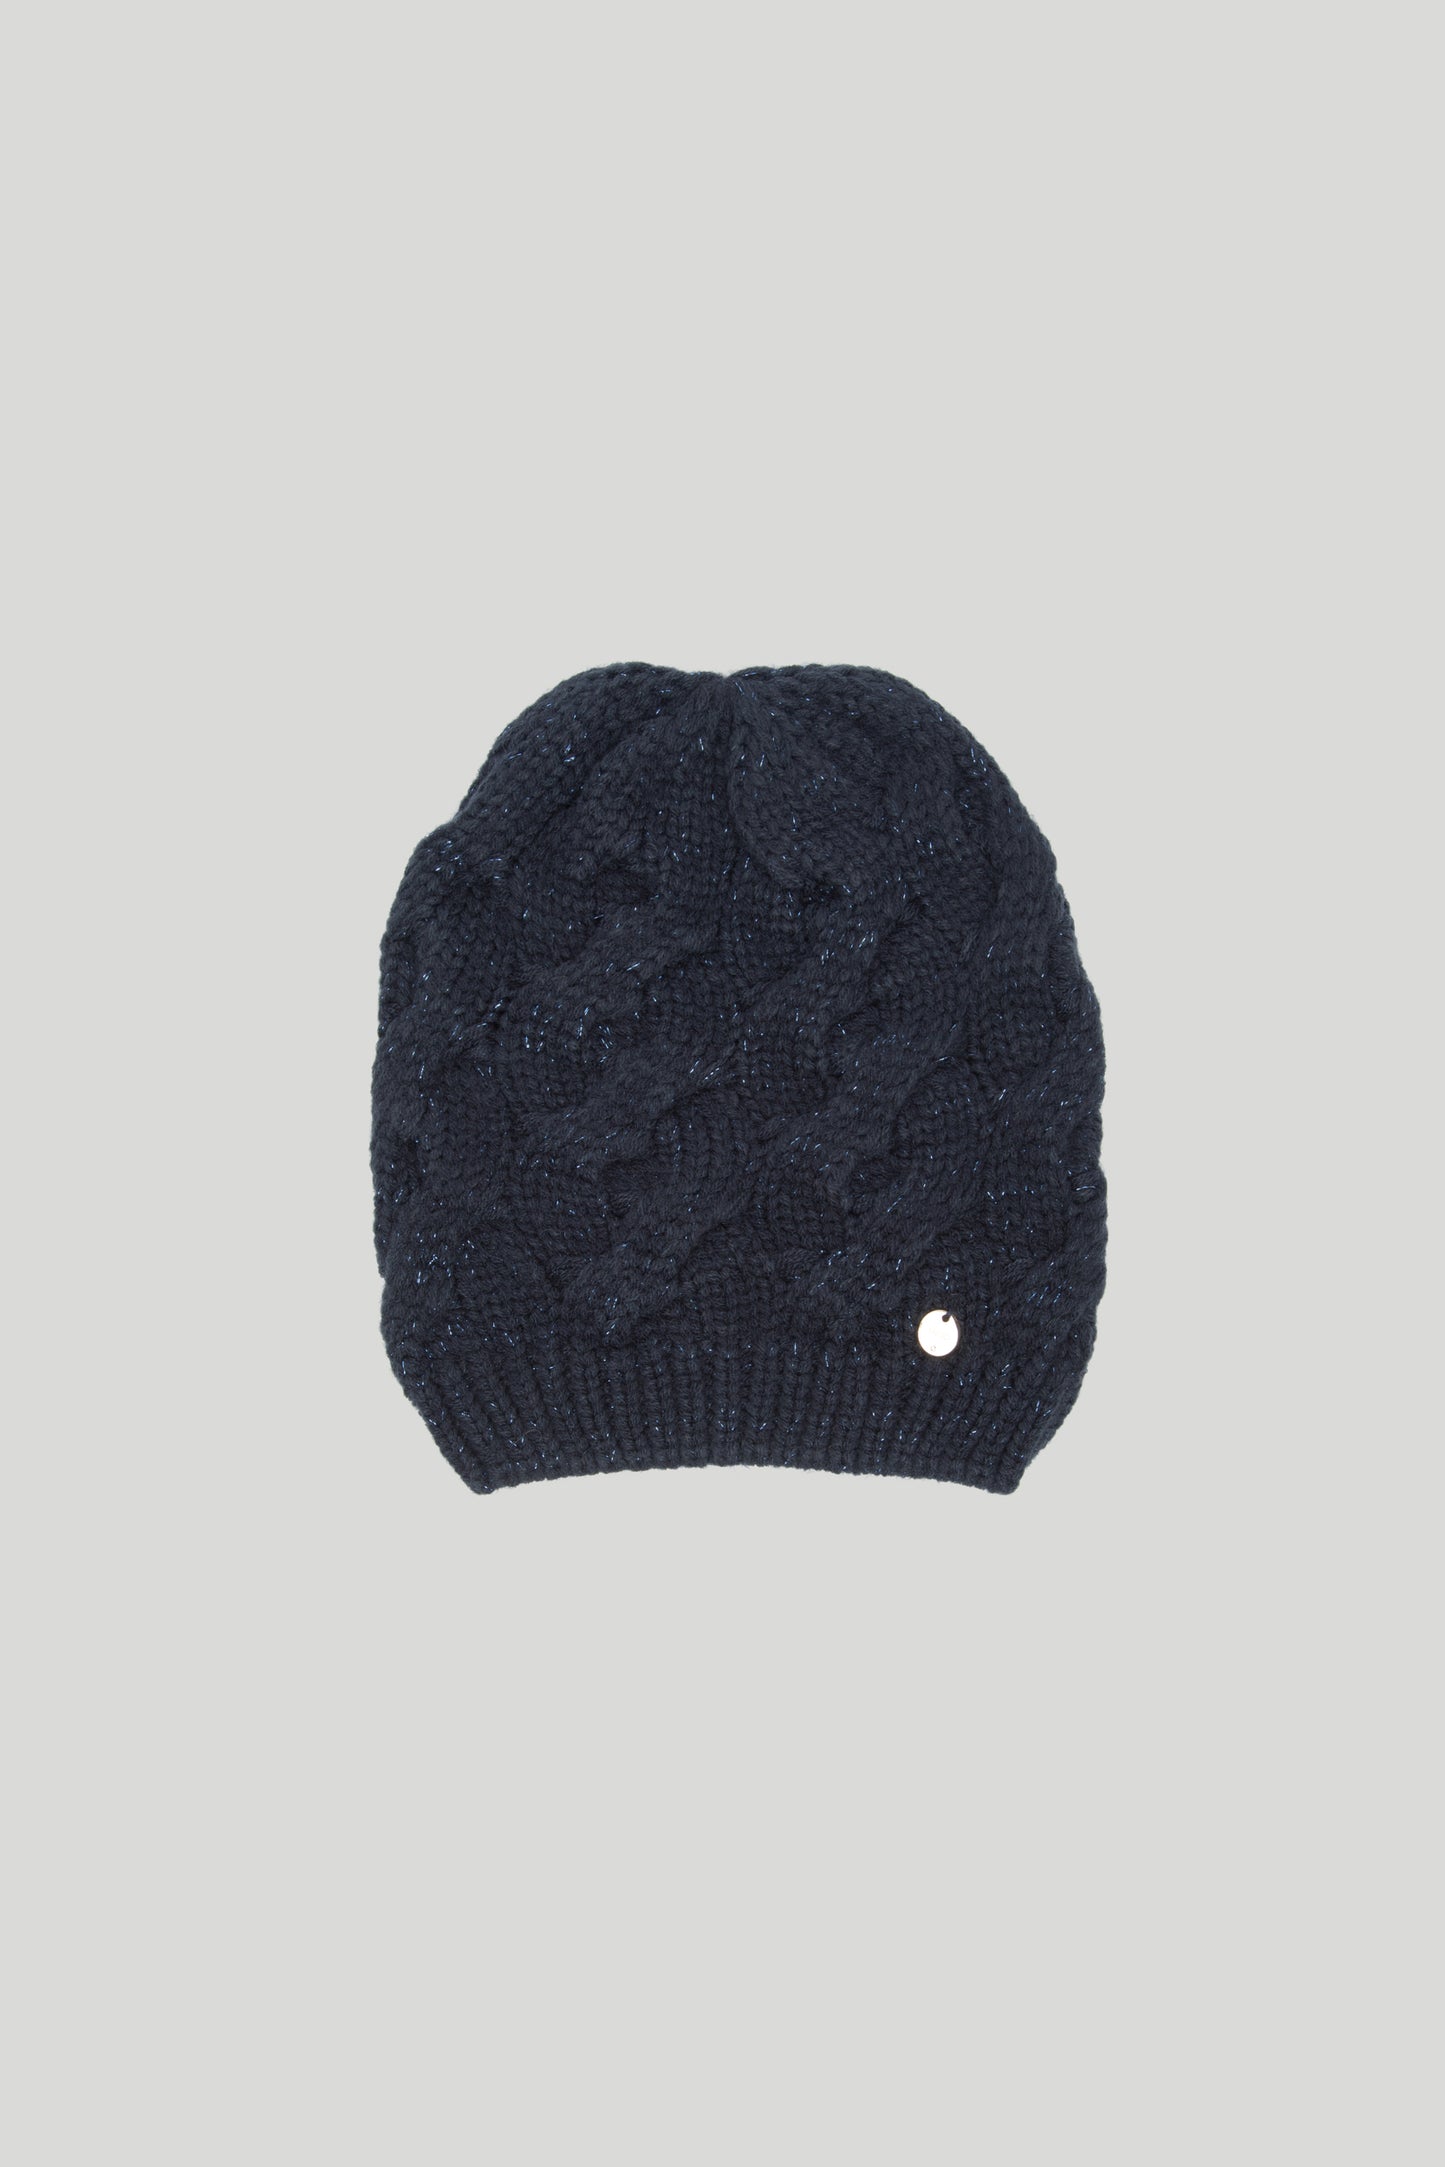 LIU JO Midnight Blue knitted hat